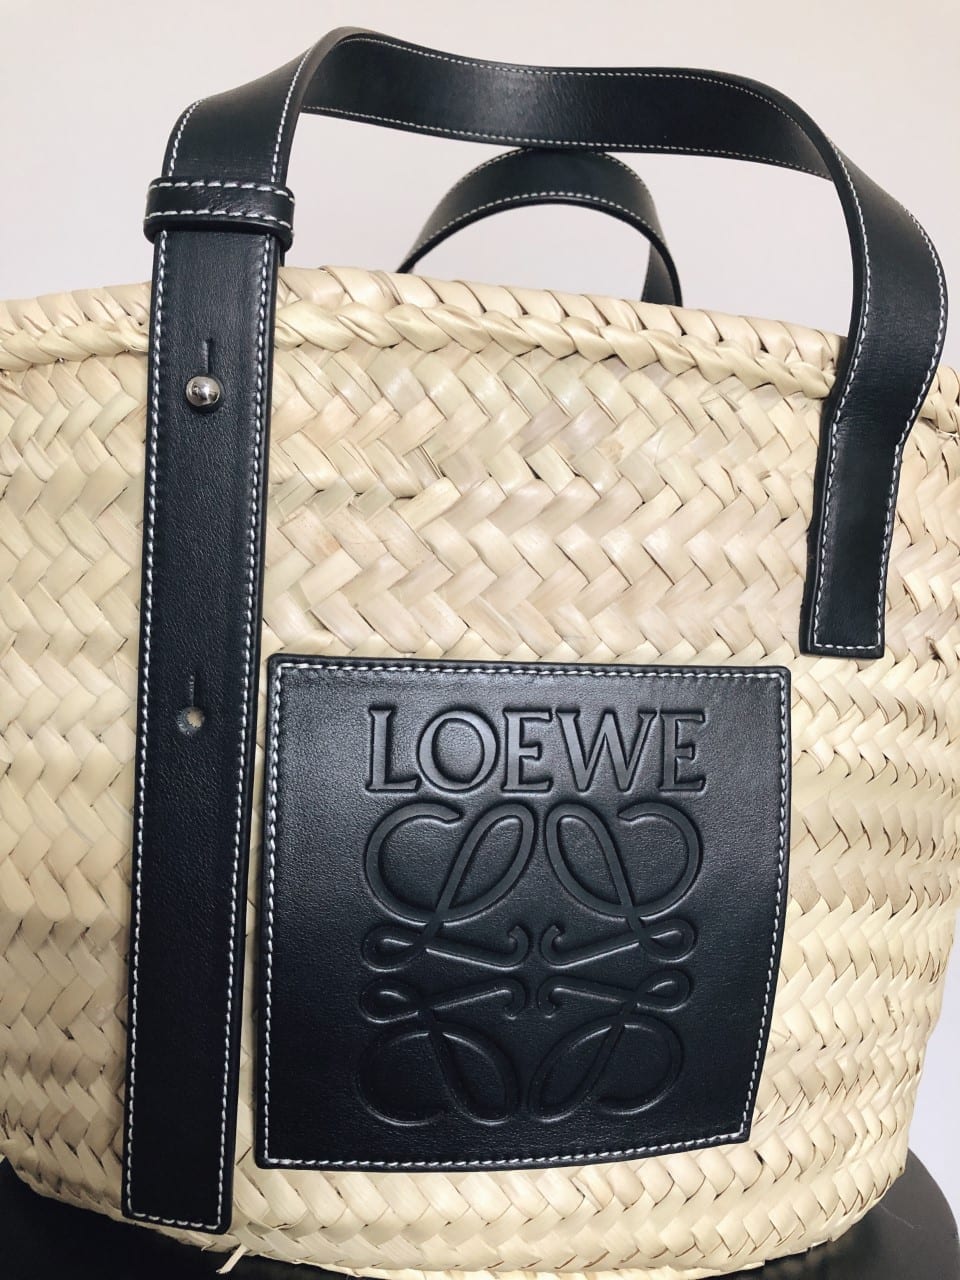 Loewe Basket Bag Size Medium